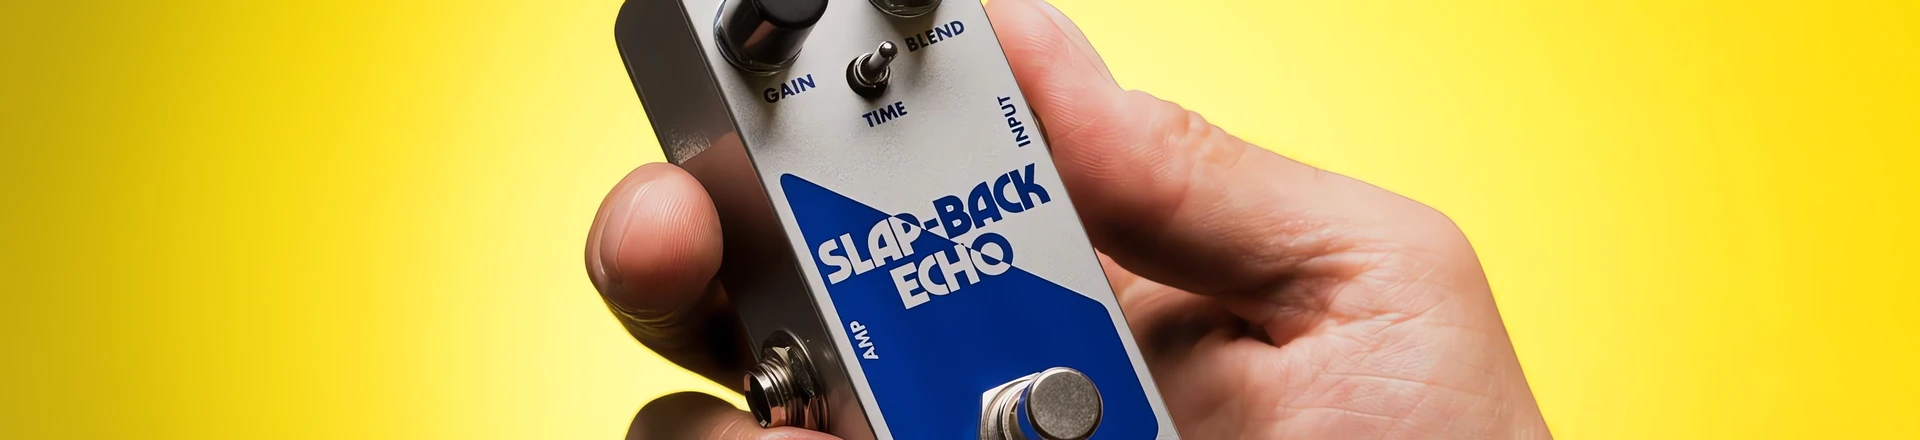 EHX prezentuje nową odsłonę klasycznego delay'a Slap Back Echo 